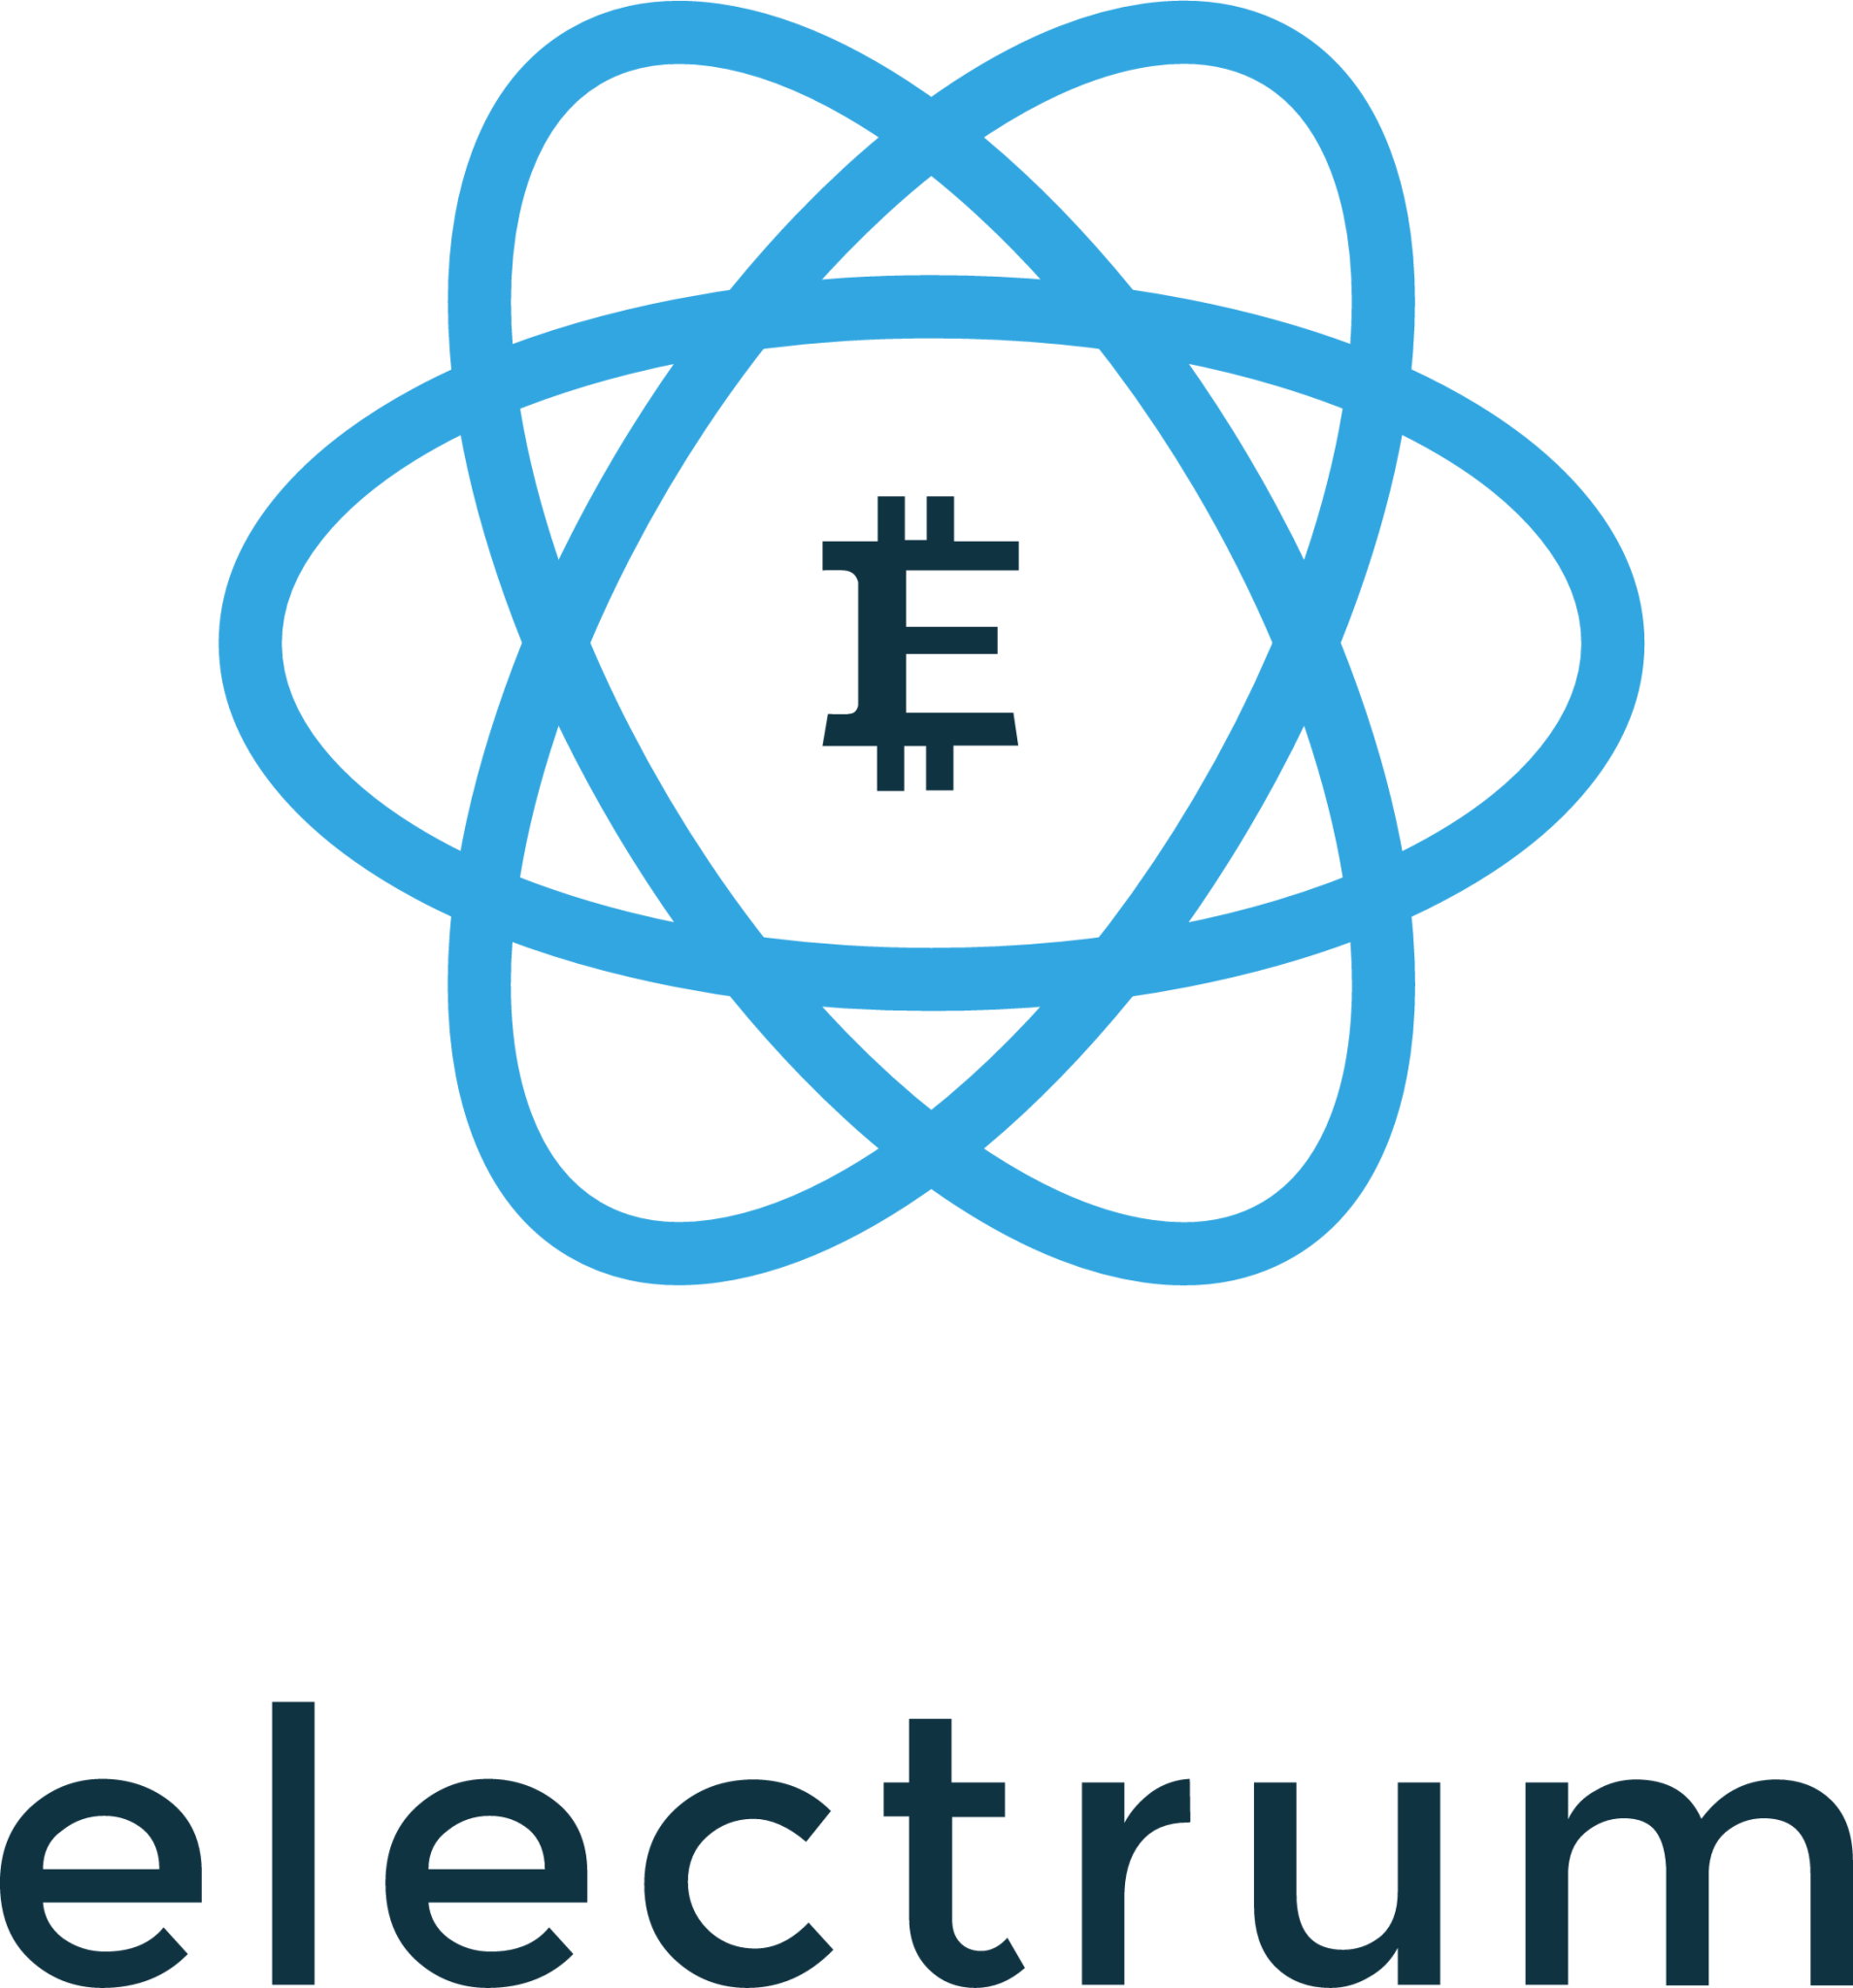 new electrum textlogo icon